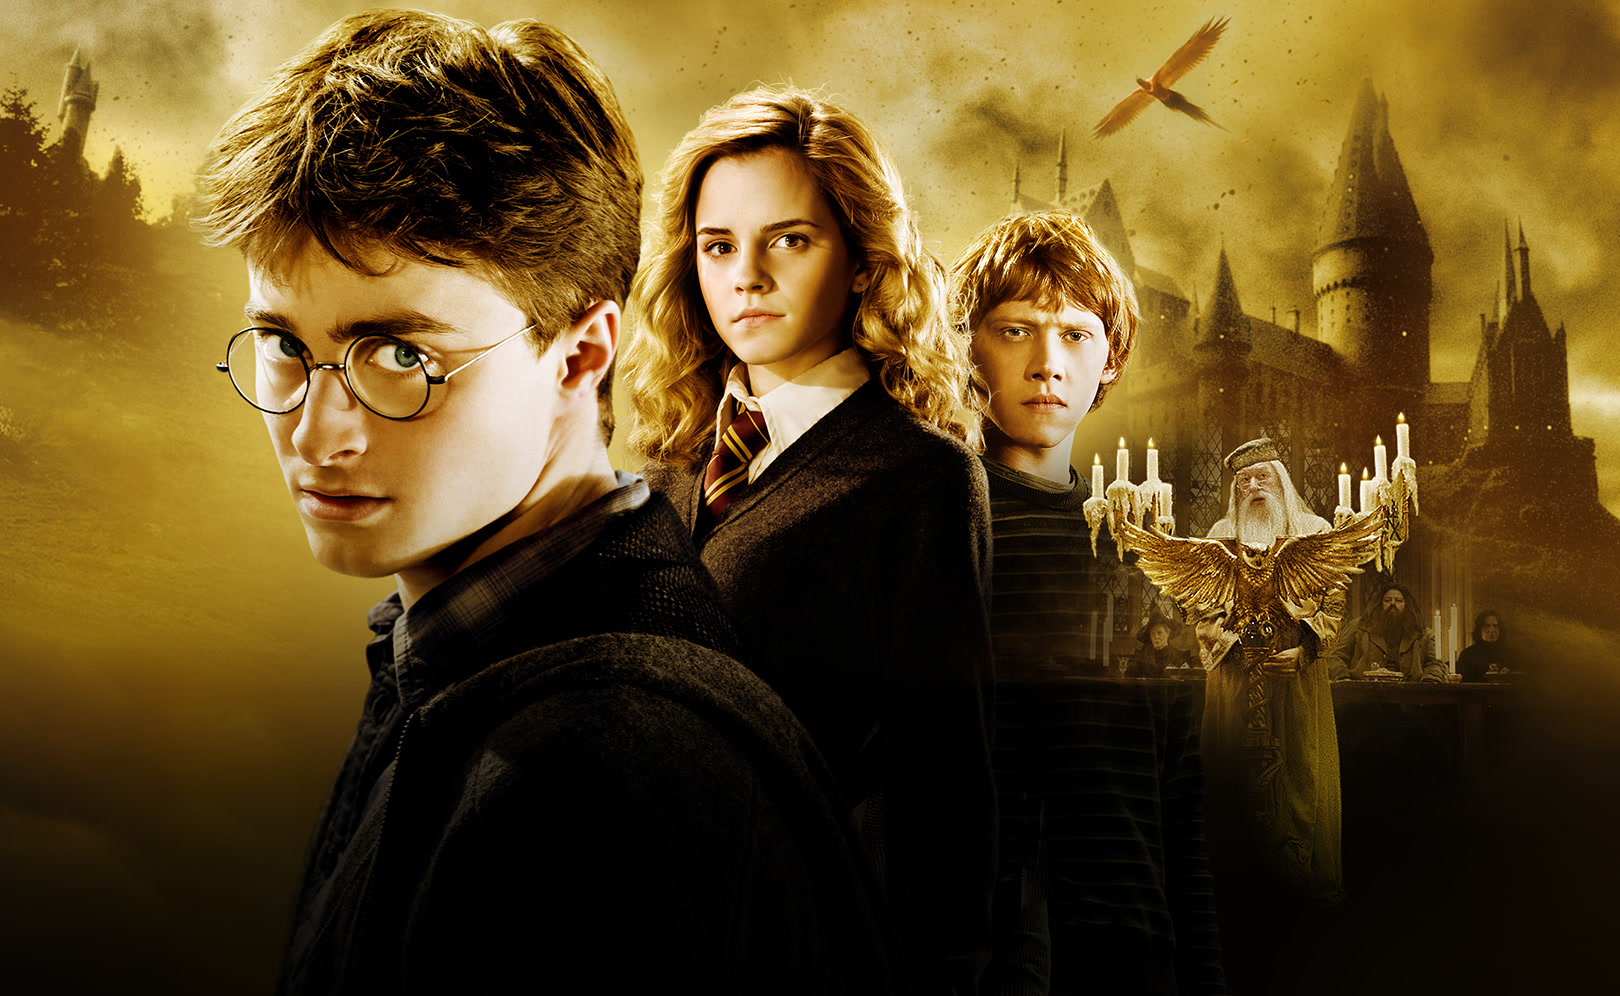 Magia poza Hogwartem - David Yates zapowiada nowy film o Harrym Potterze!